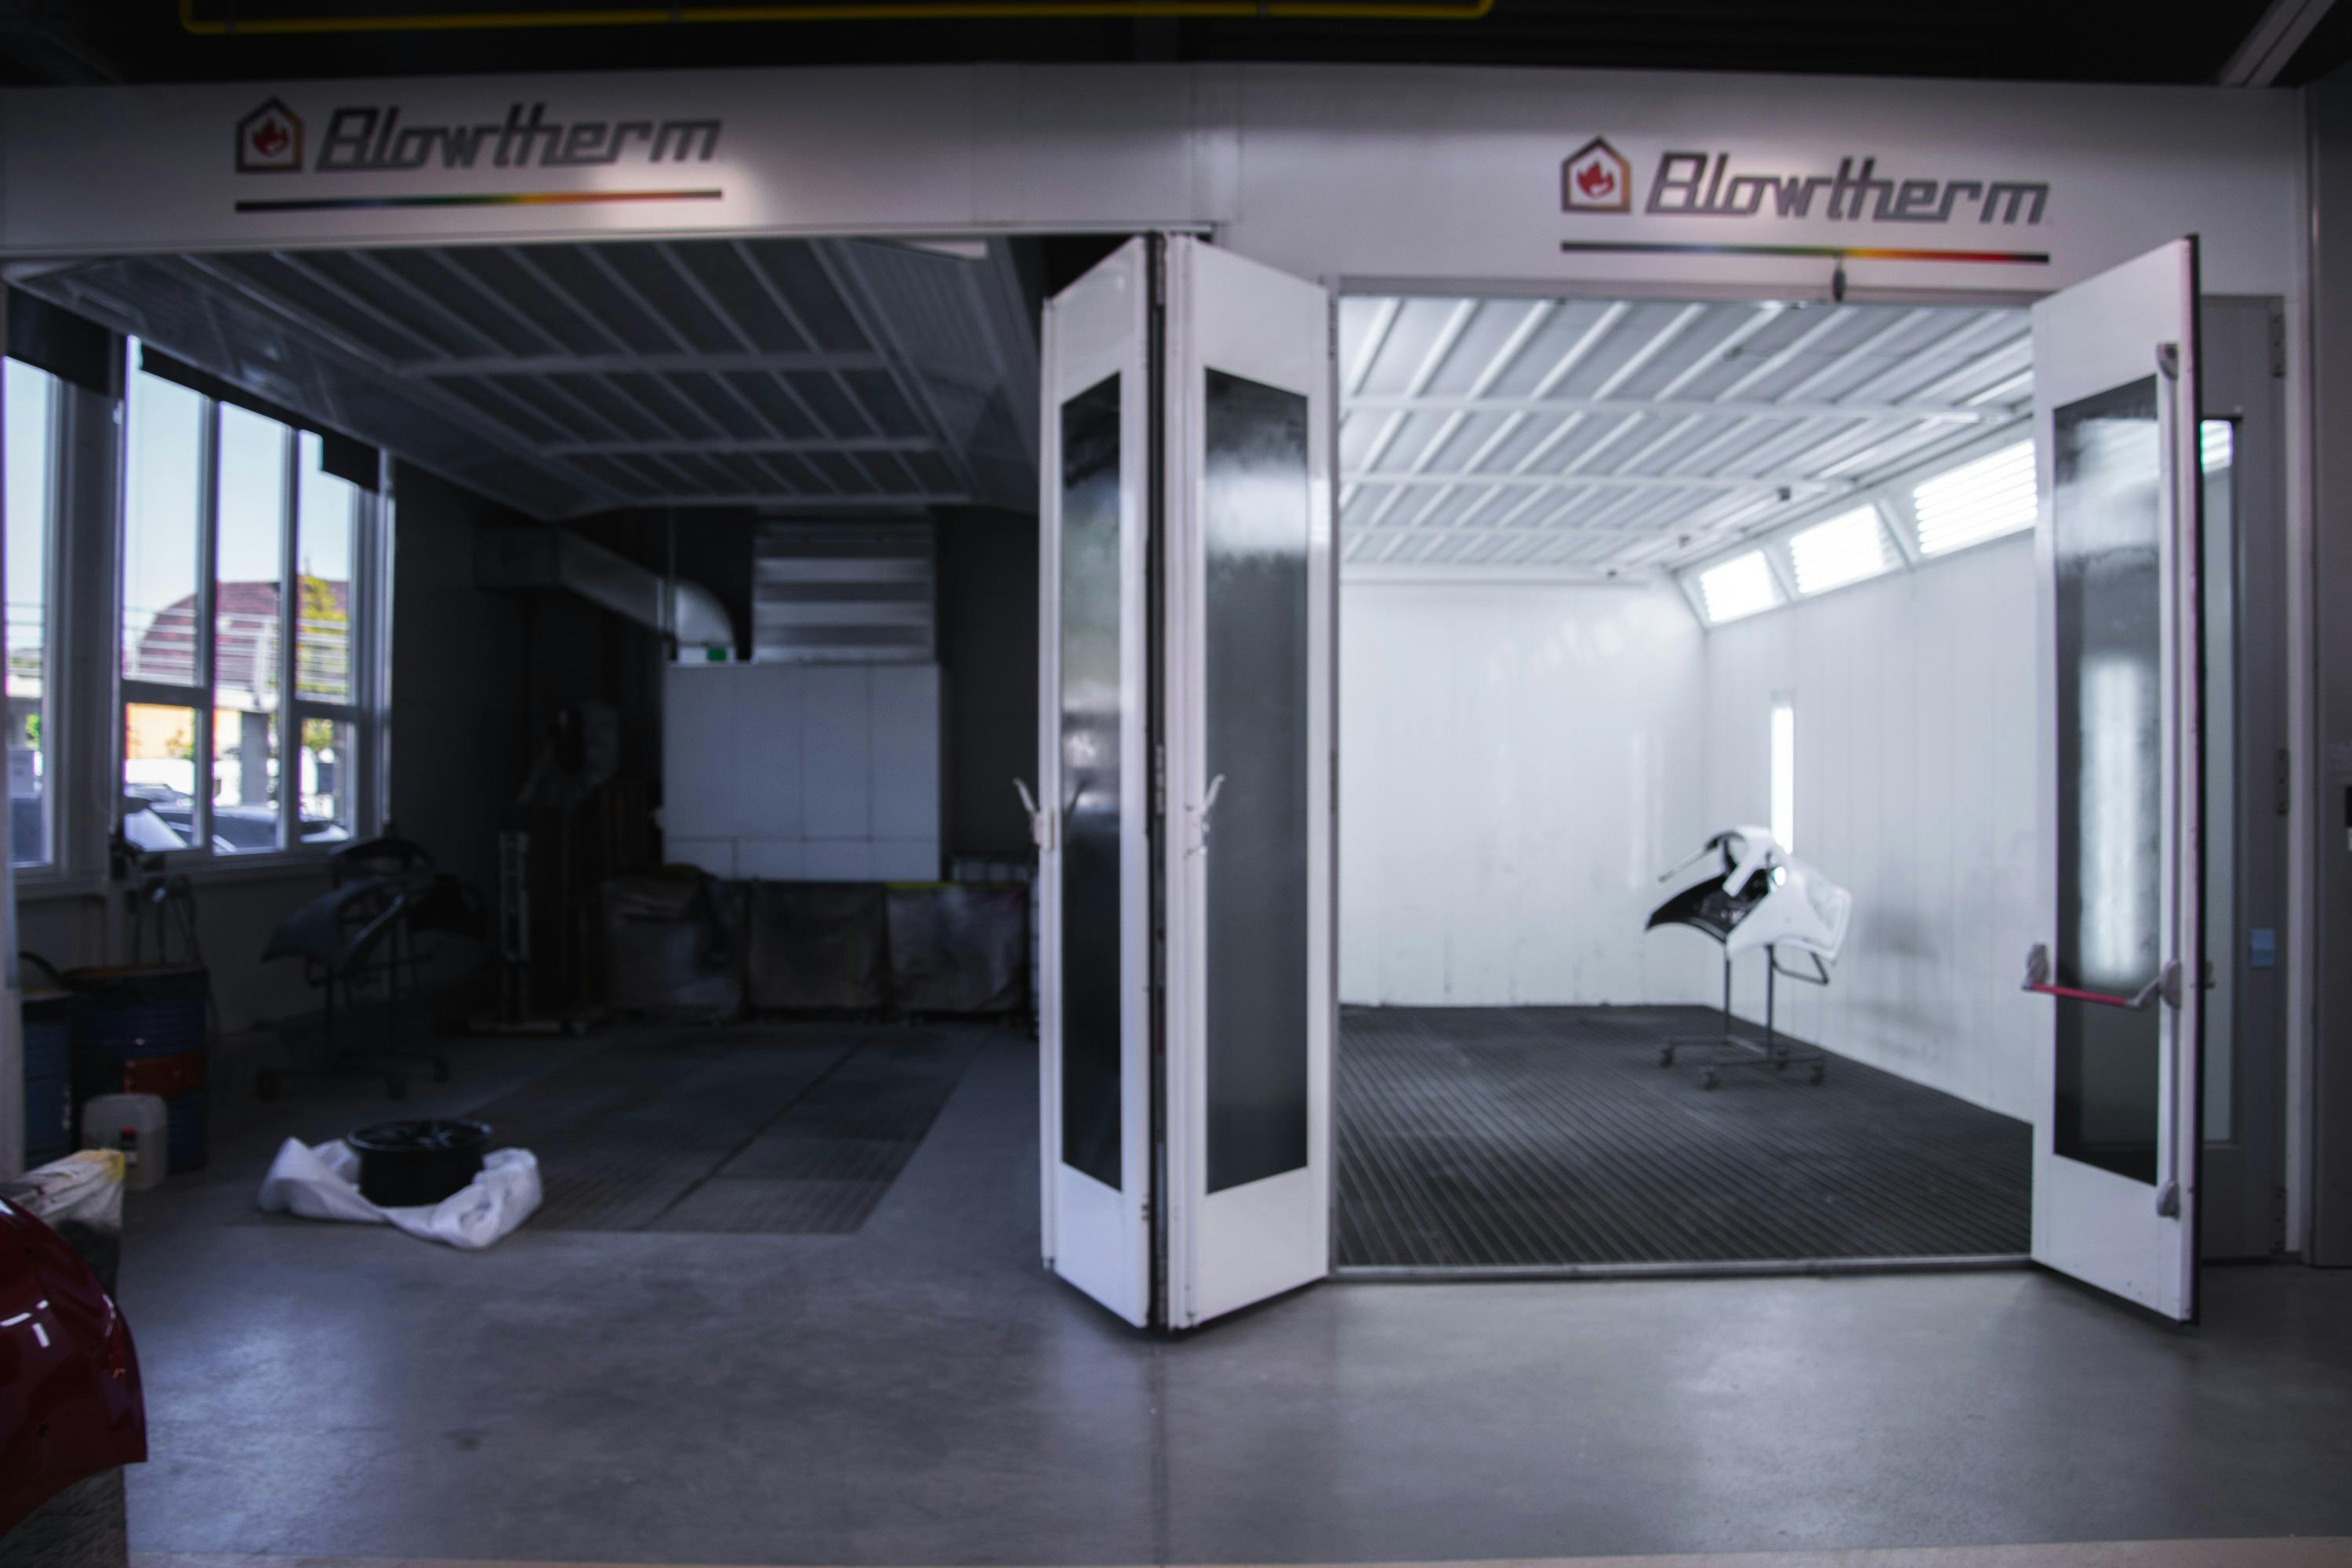 image of Blowtherm fényezőfülke és előkészítő állás Mercedes nagykereskedésnél